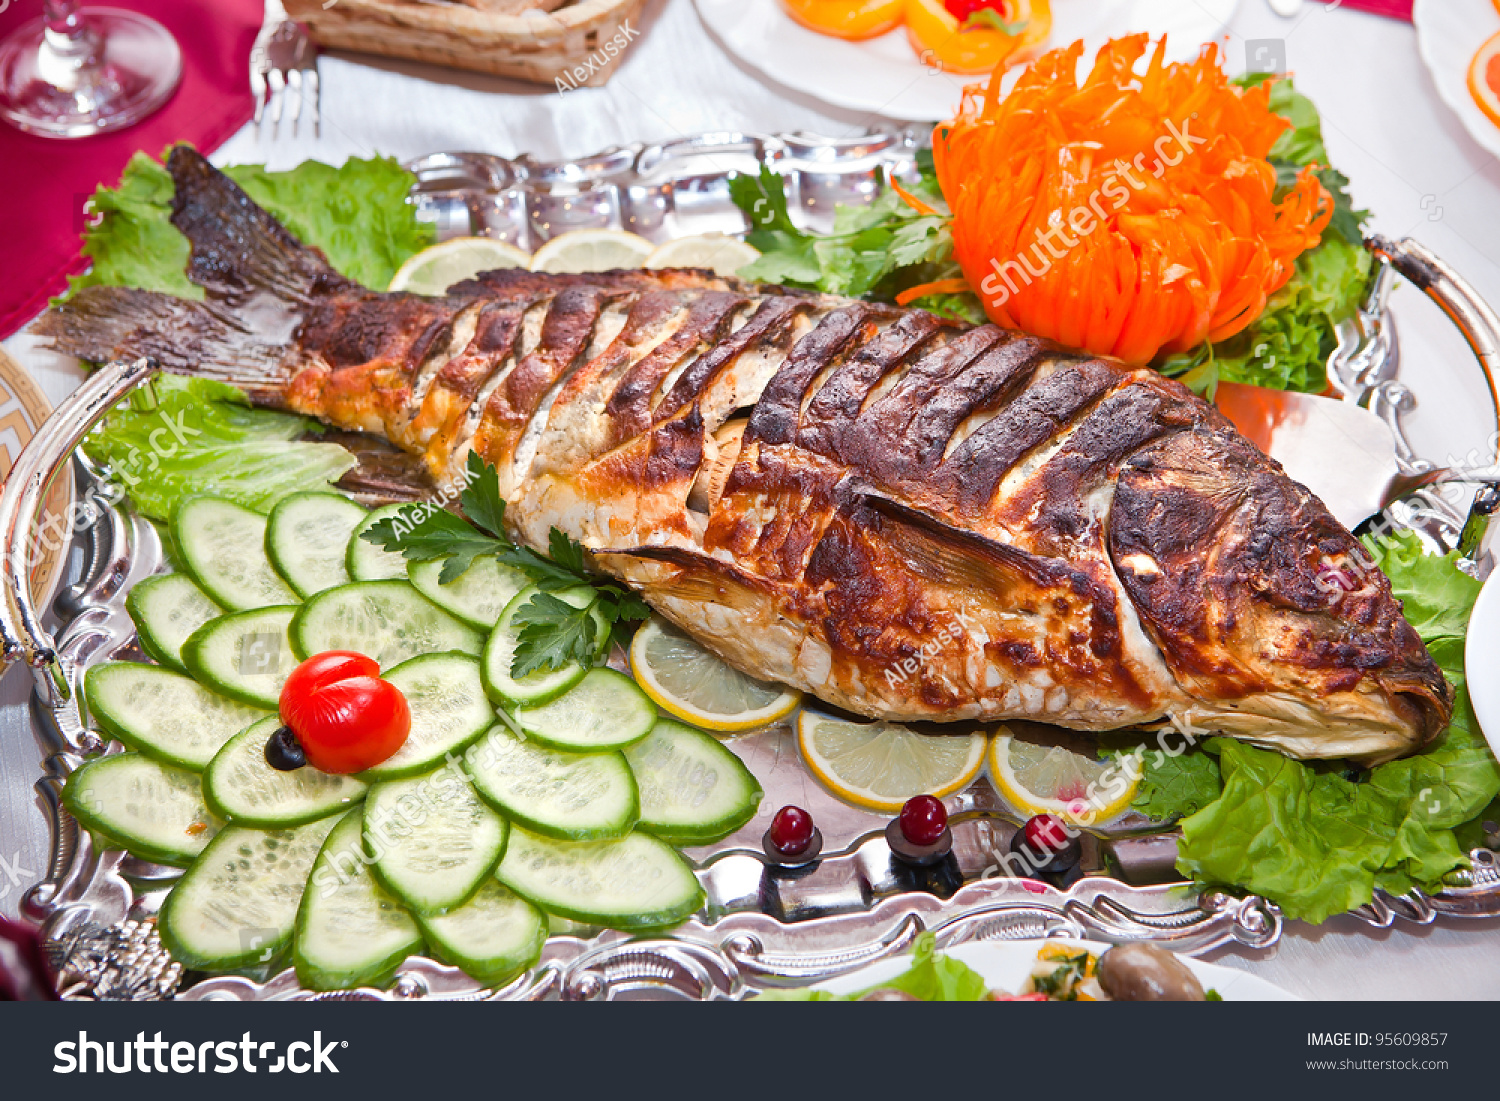 Блюда из рыбы на столе. Рыбные блюда. Блюда из рыбы. Красивые блюда из рыбы. Рыбные блюда на праздничный стол.